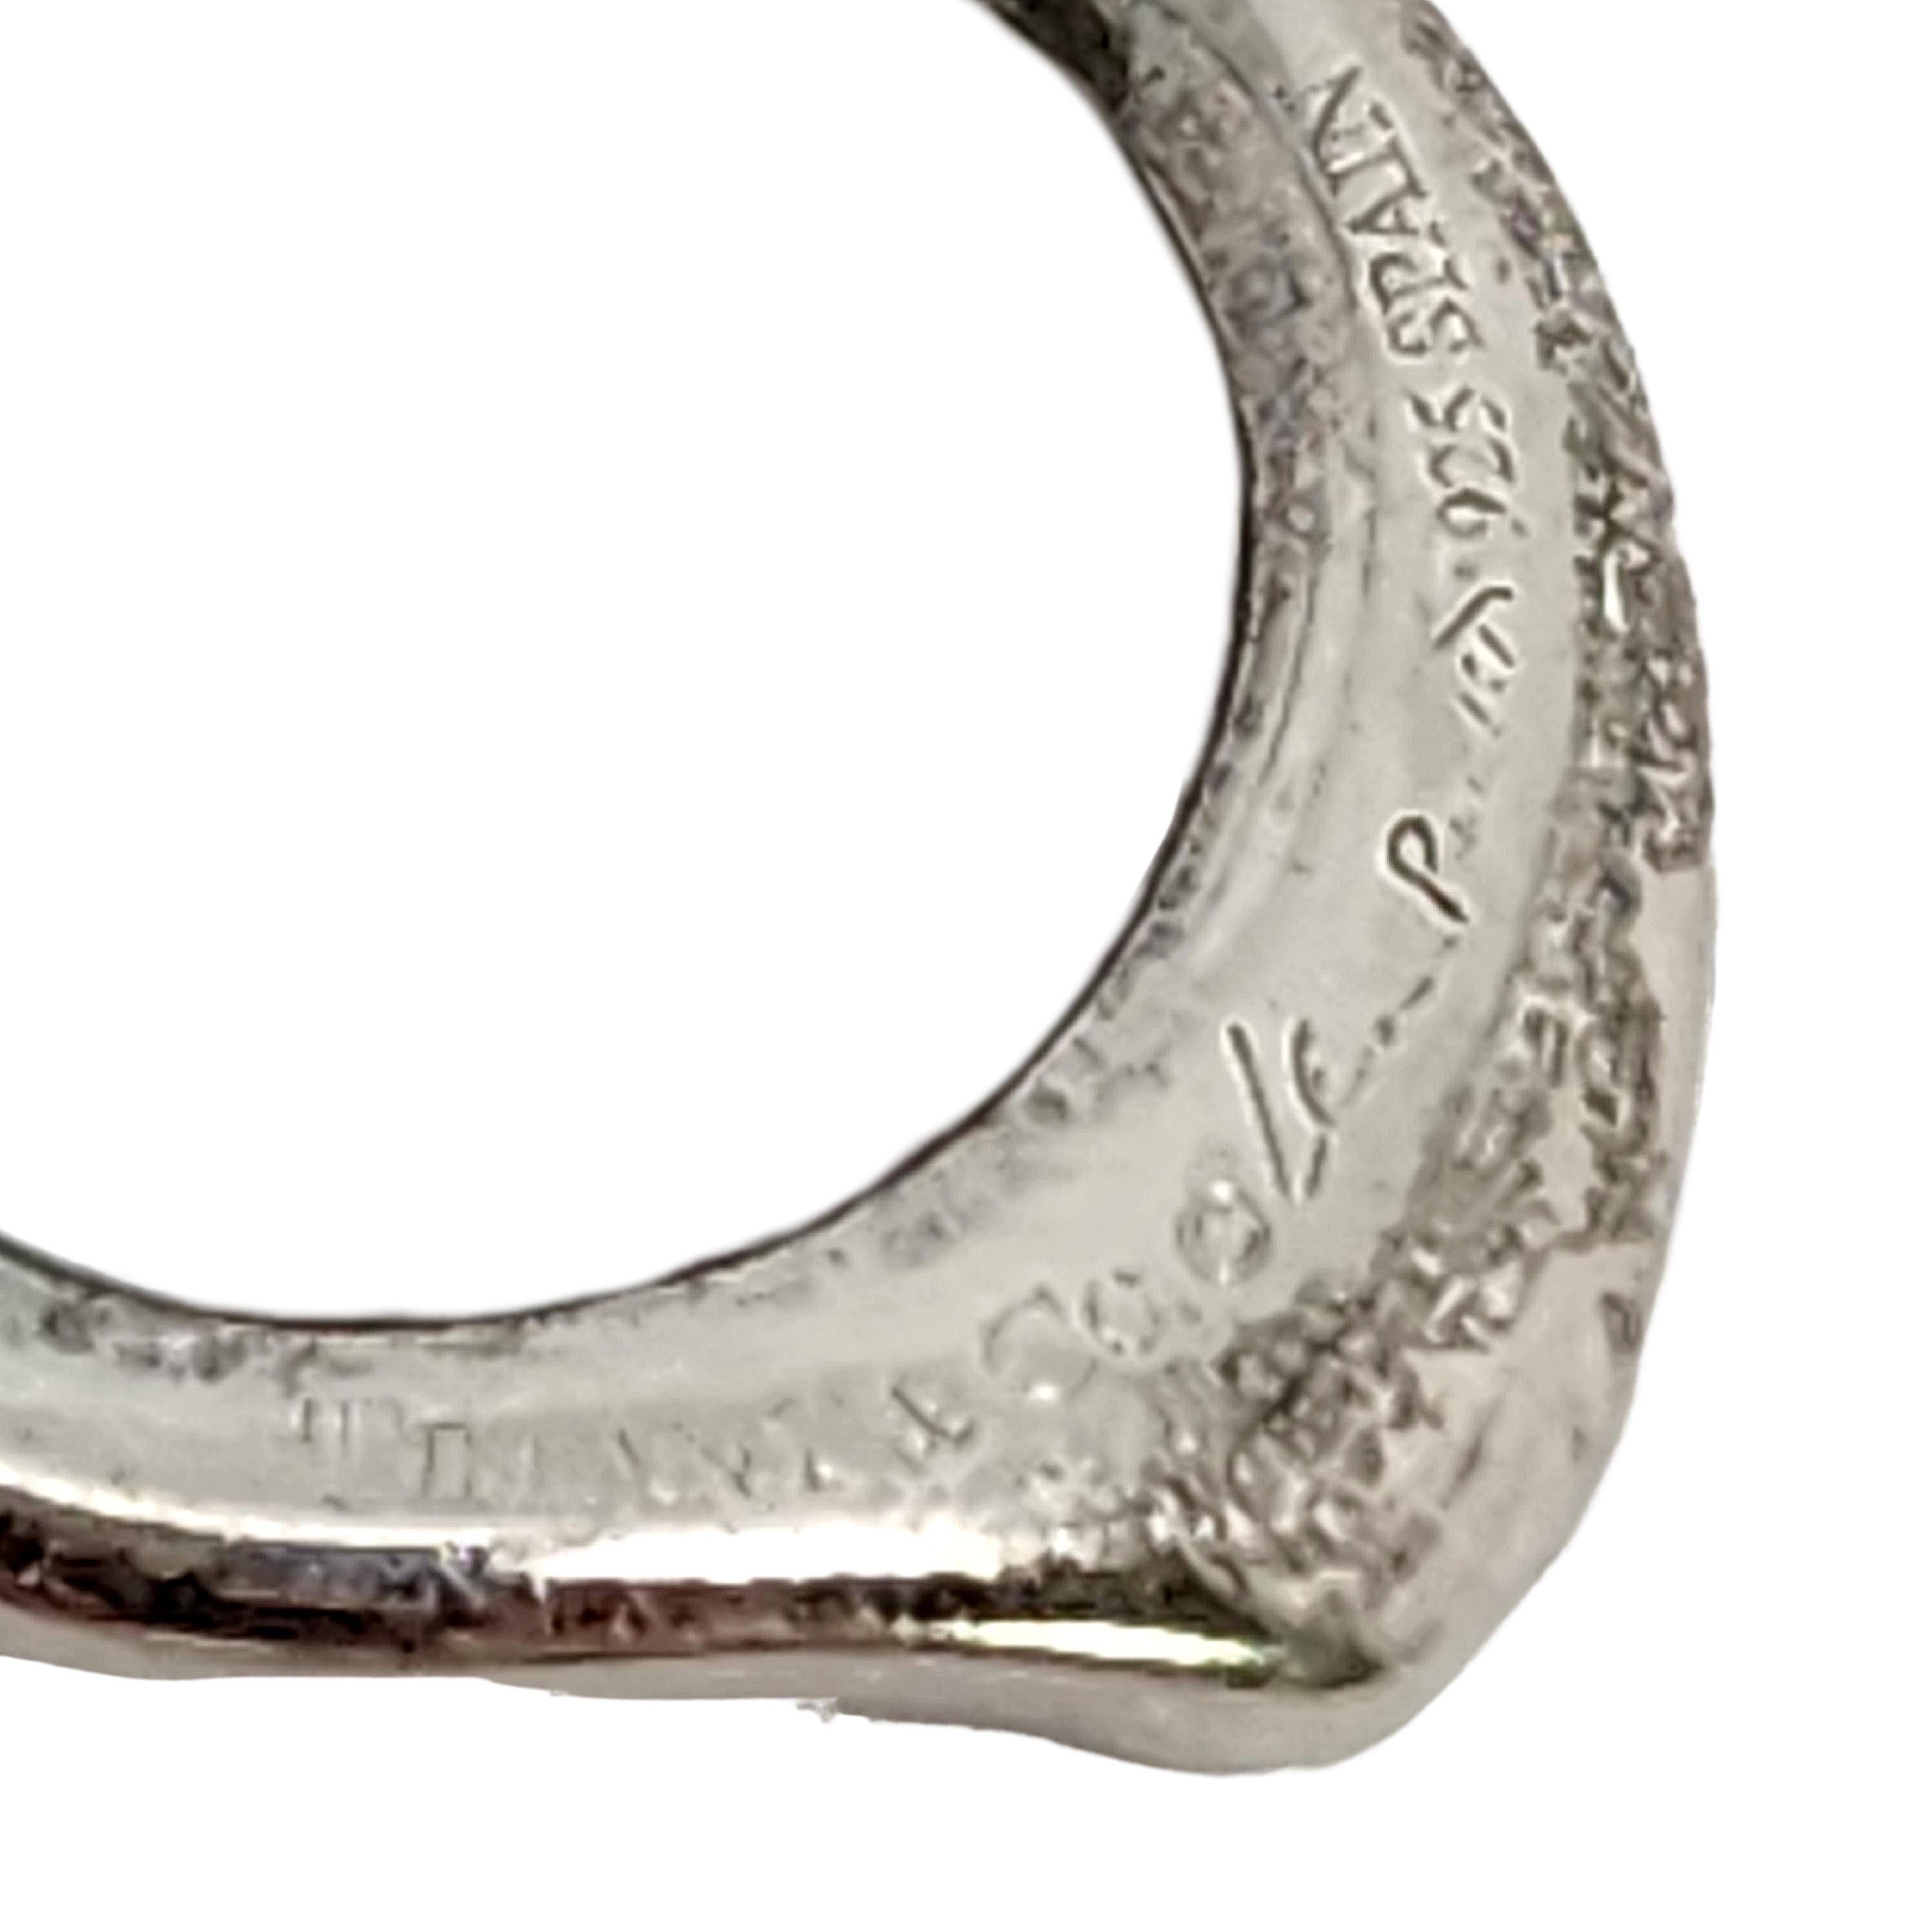 Tiffany & Co Elsa Peretti Sterling Silver Small 16mm Open Heart Pendant #14407 For Sale 1